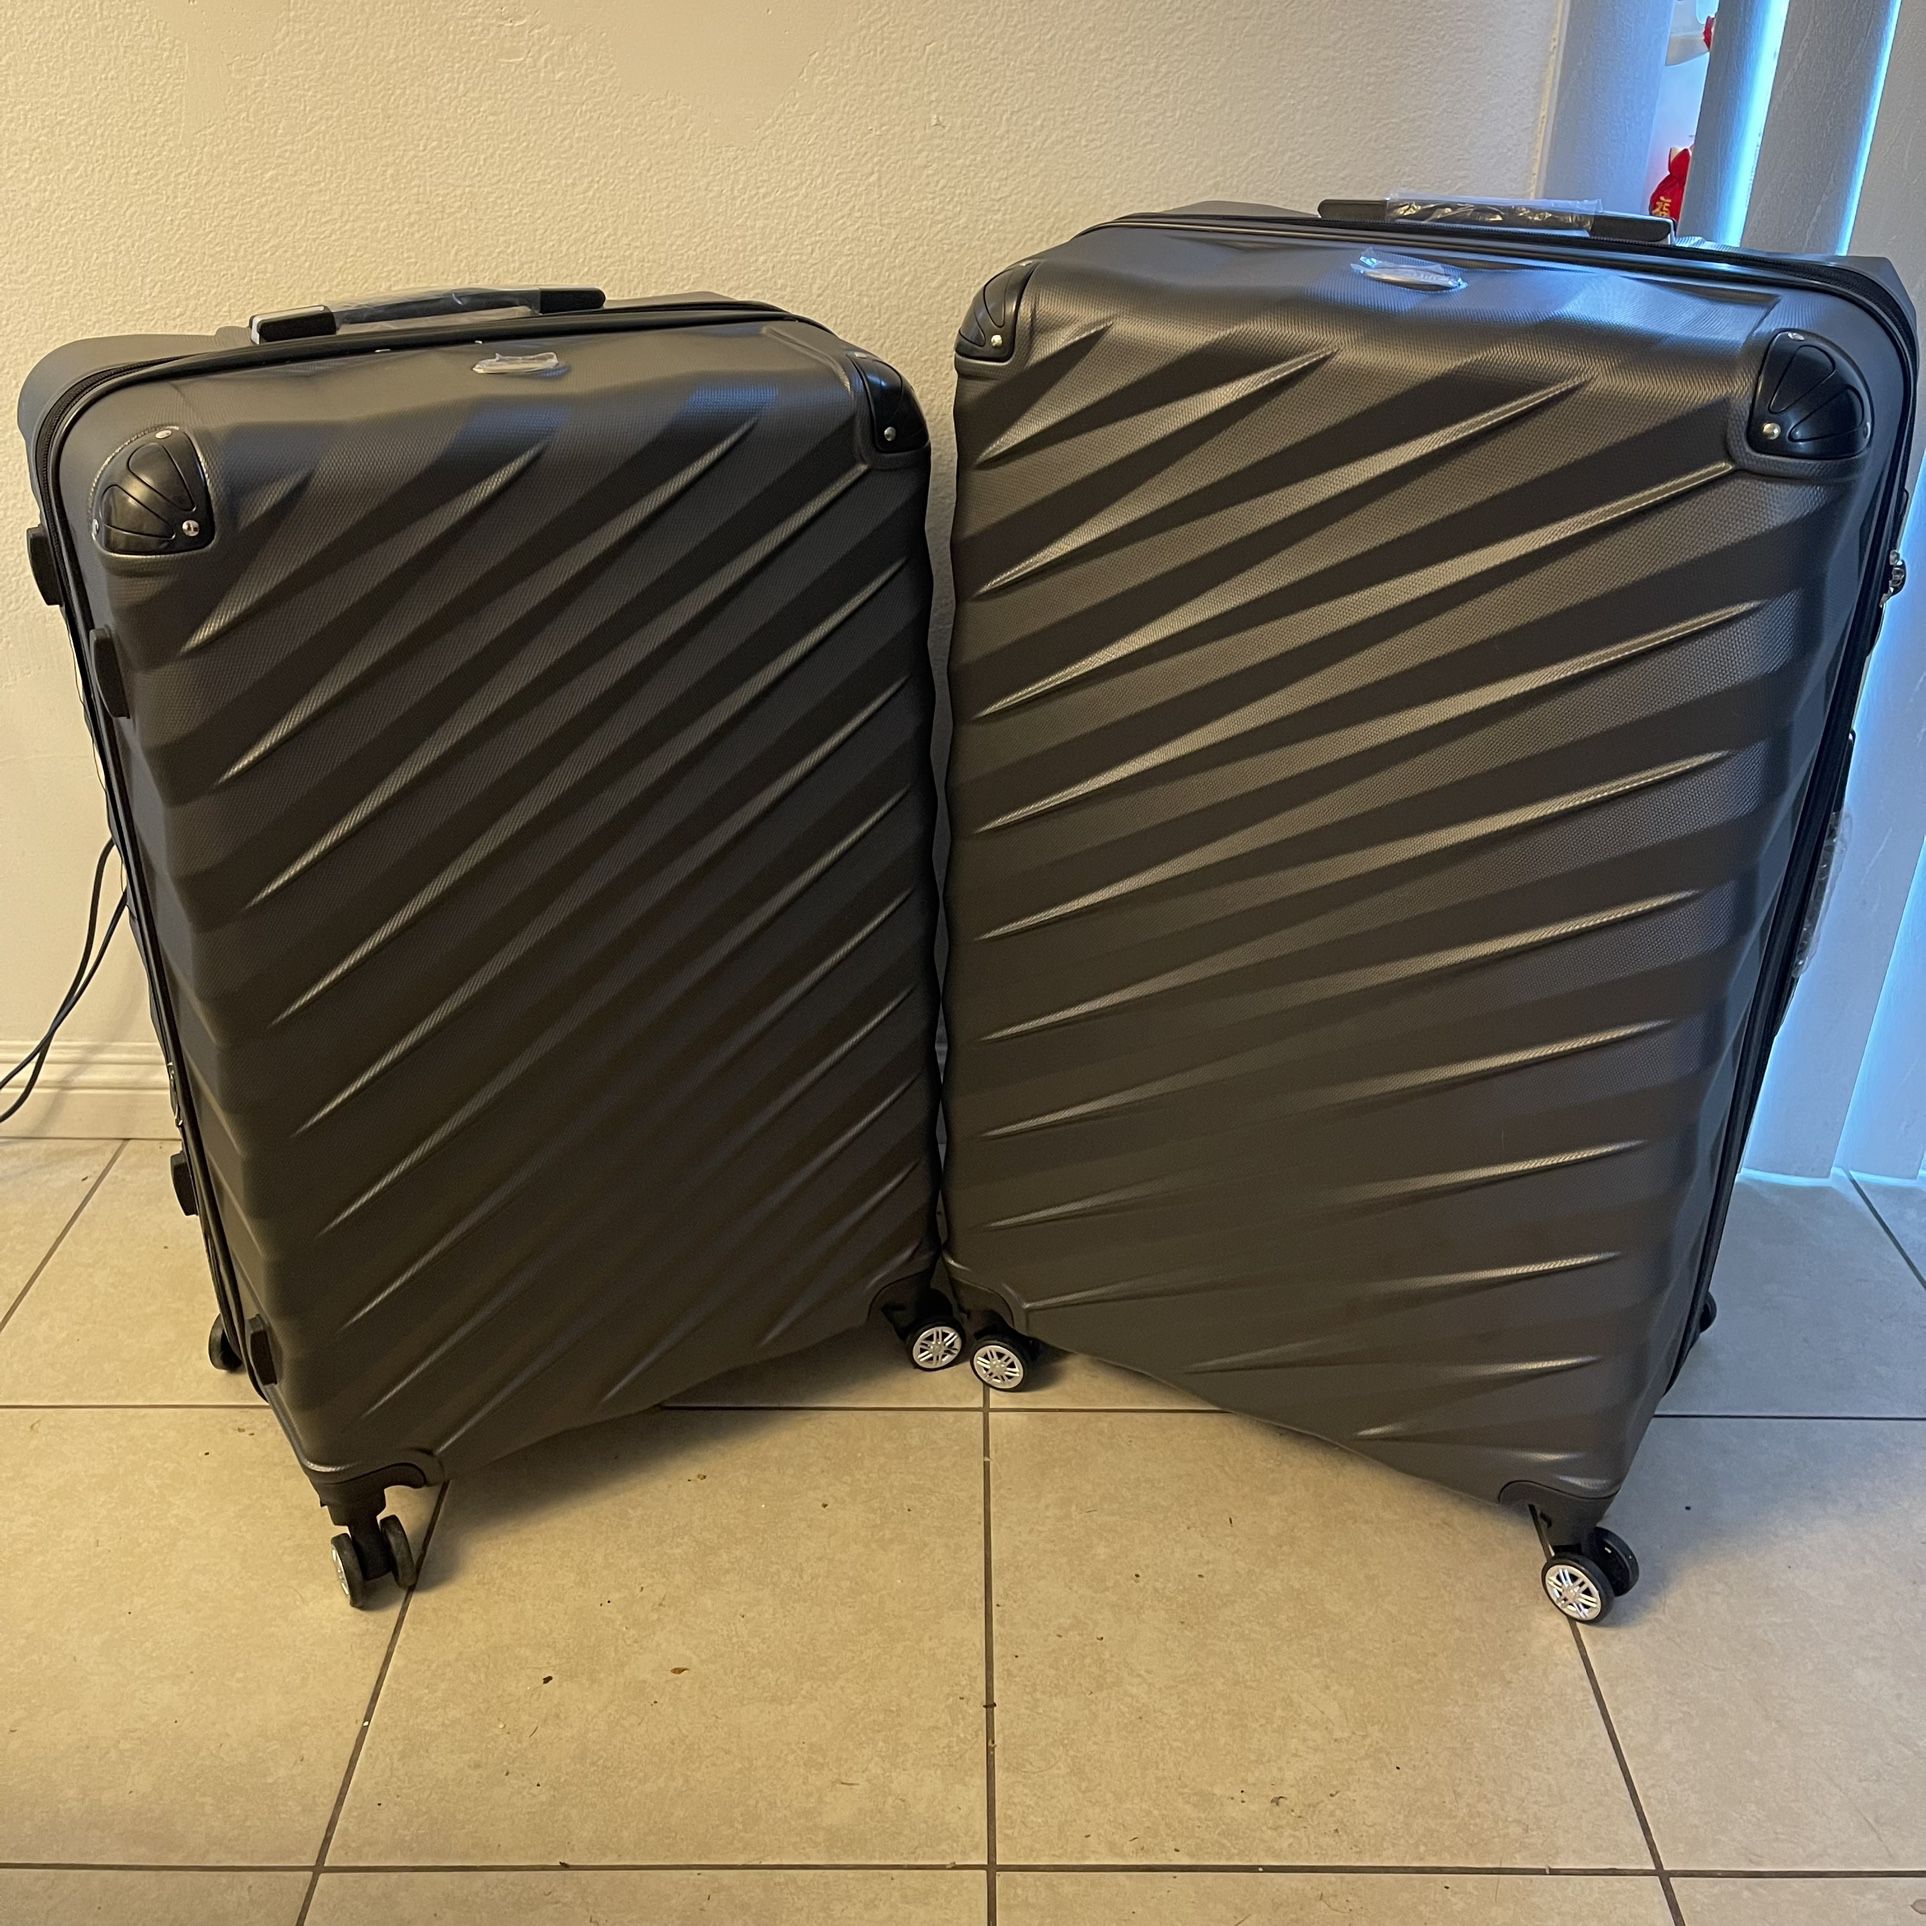 NEW 32” & 30” Extra Large Hardcase Luggage - Charcoal Grey